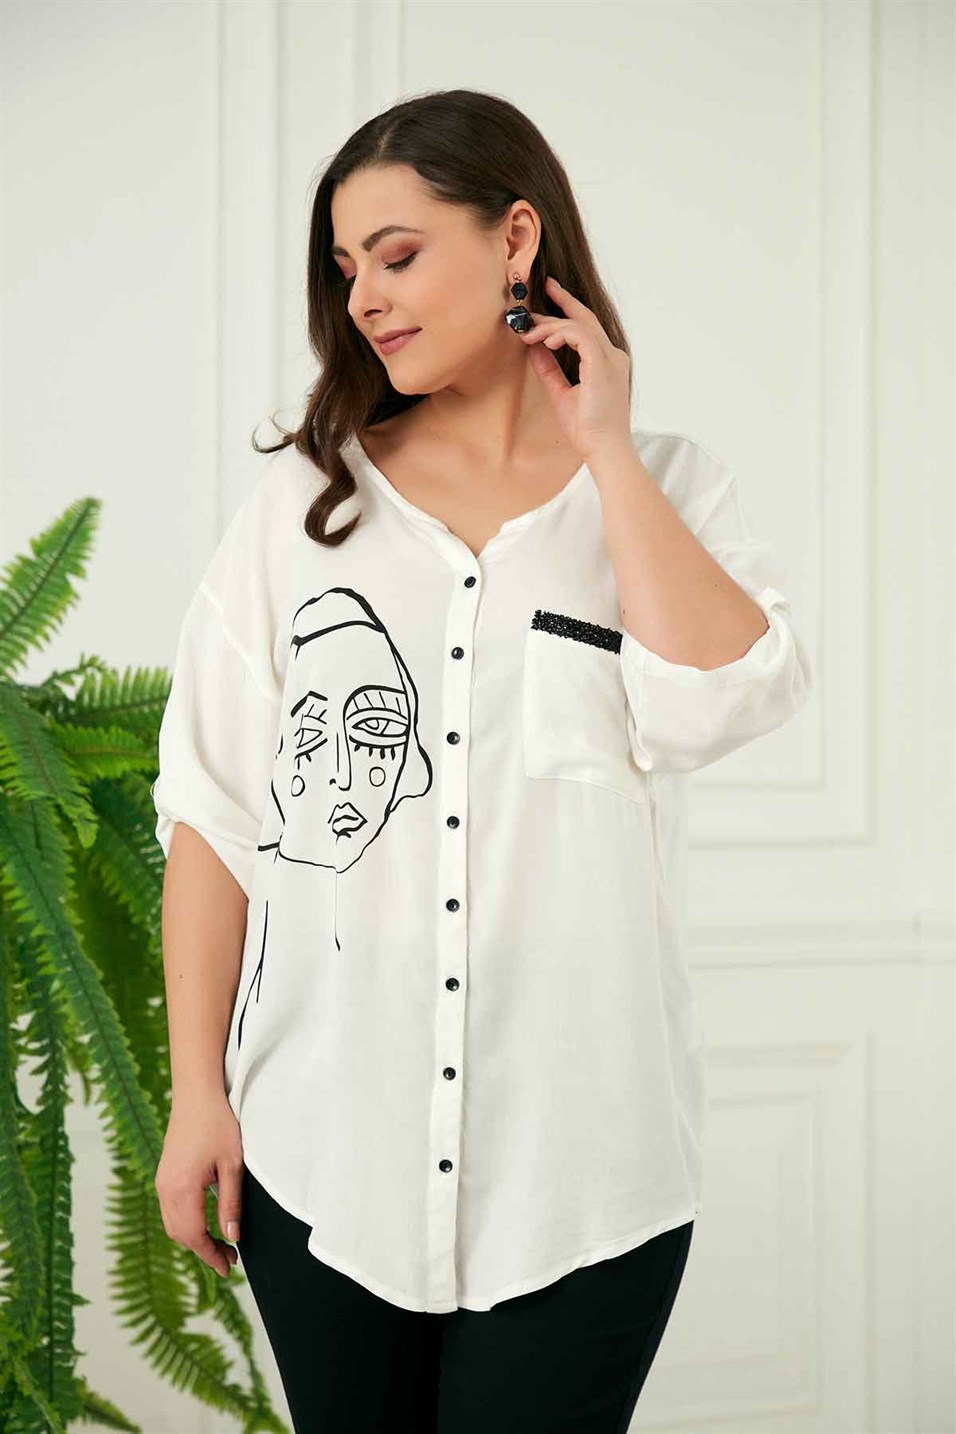 Cep Taş Detaylı Yüz Desenli Büyük Beden Gömlek Beyaz - RMG